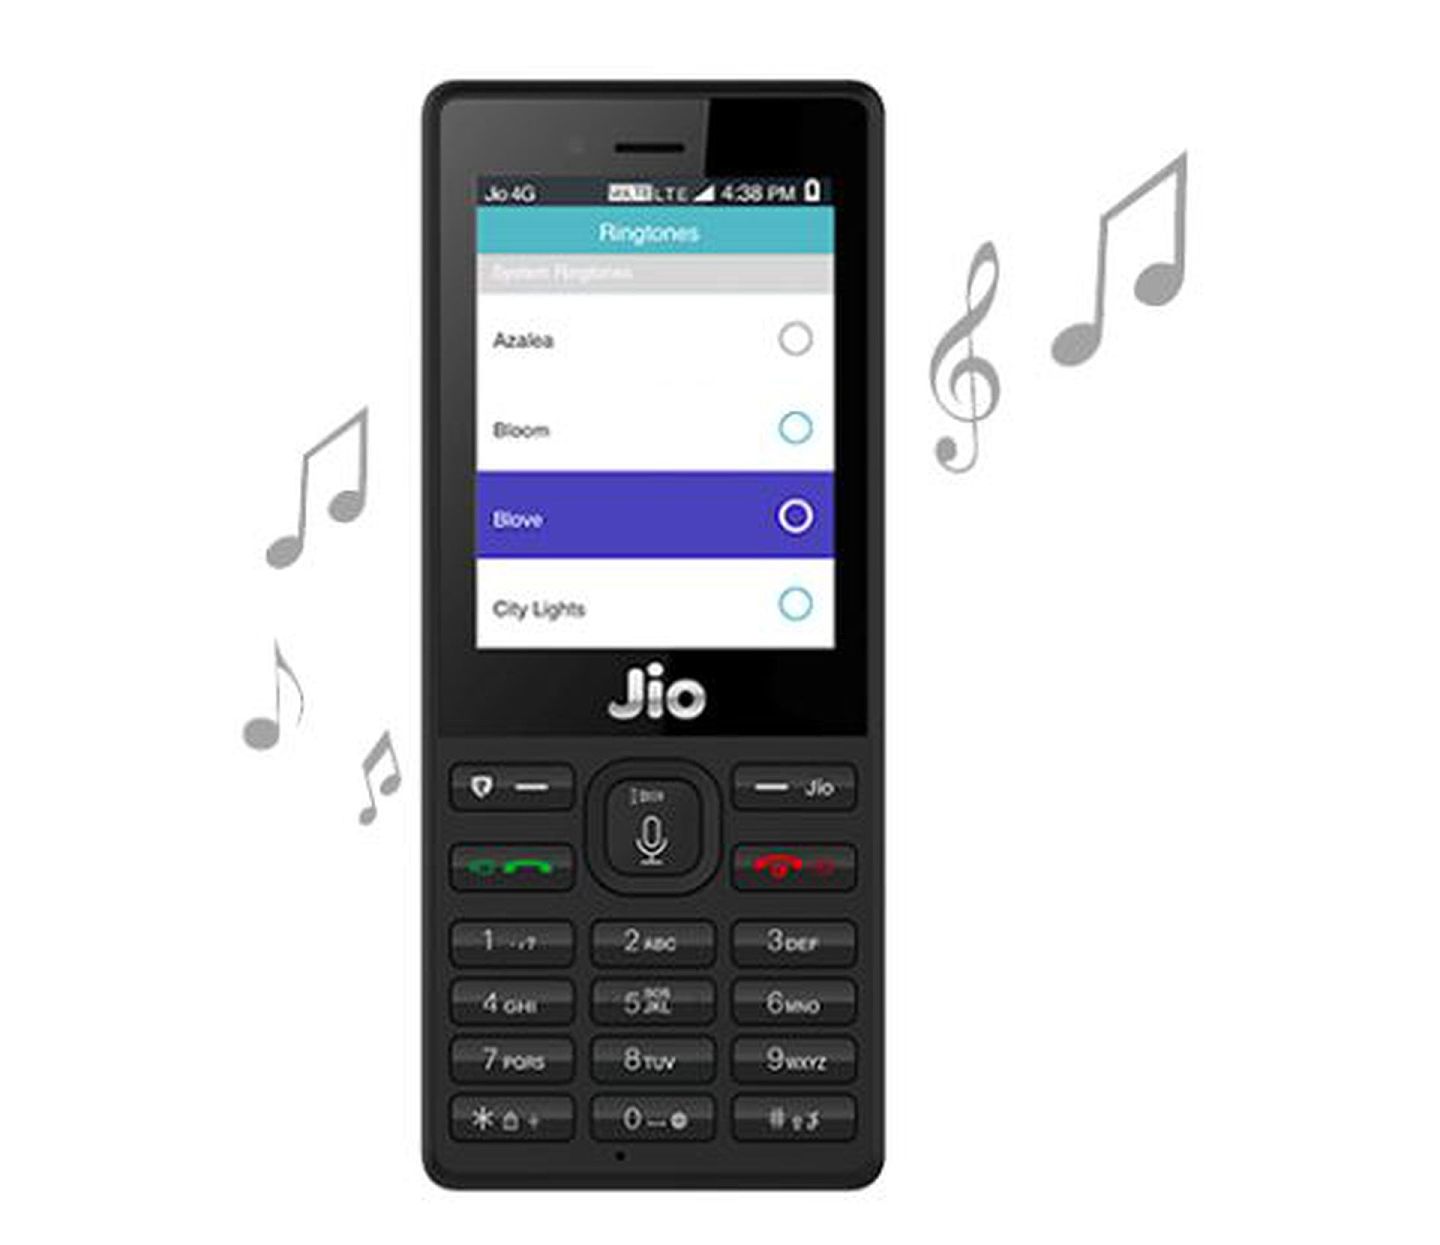 JIO手机价格低廉，内置“KaiOS”系统，该系统内置了Whatsapp、Youtube等常用软件，基本上满足了印度普通民众的沟通、娱乐需求。但外界也有观点认为，该机实为功能机，而非智能手机，它直接反映了印度数亿民众消费能力的低下。（JIO官网）